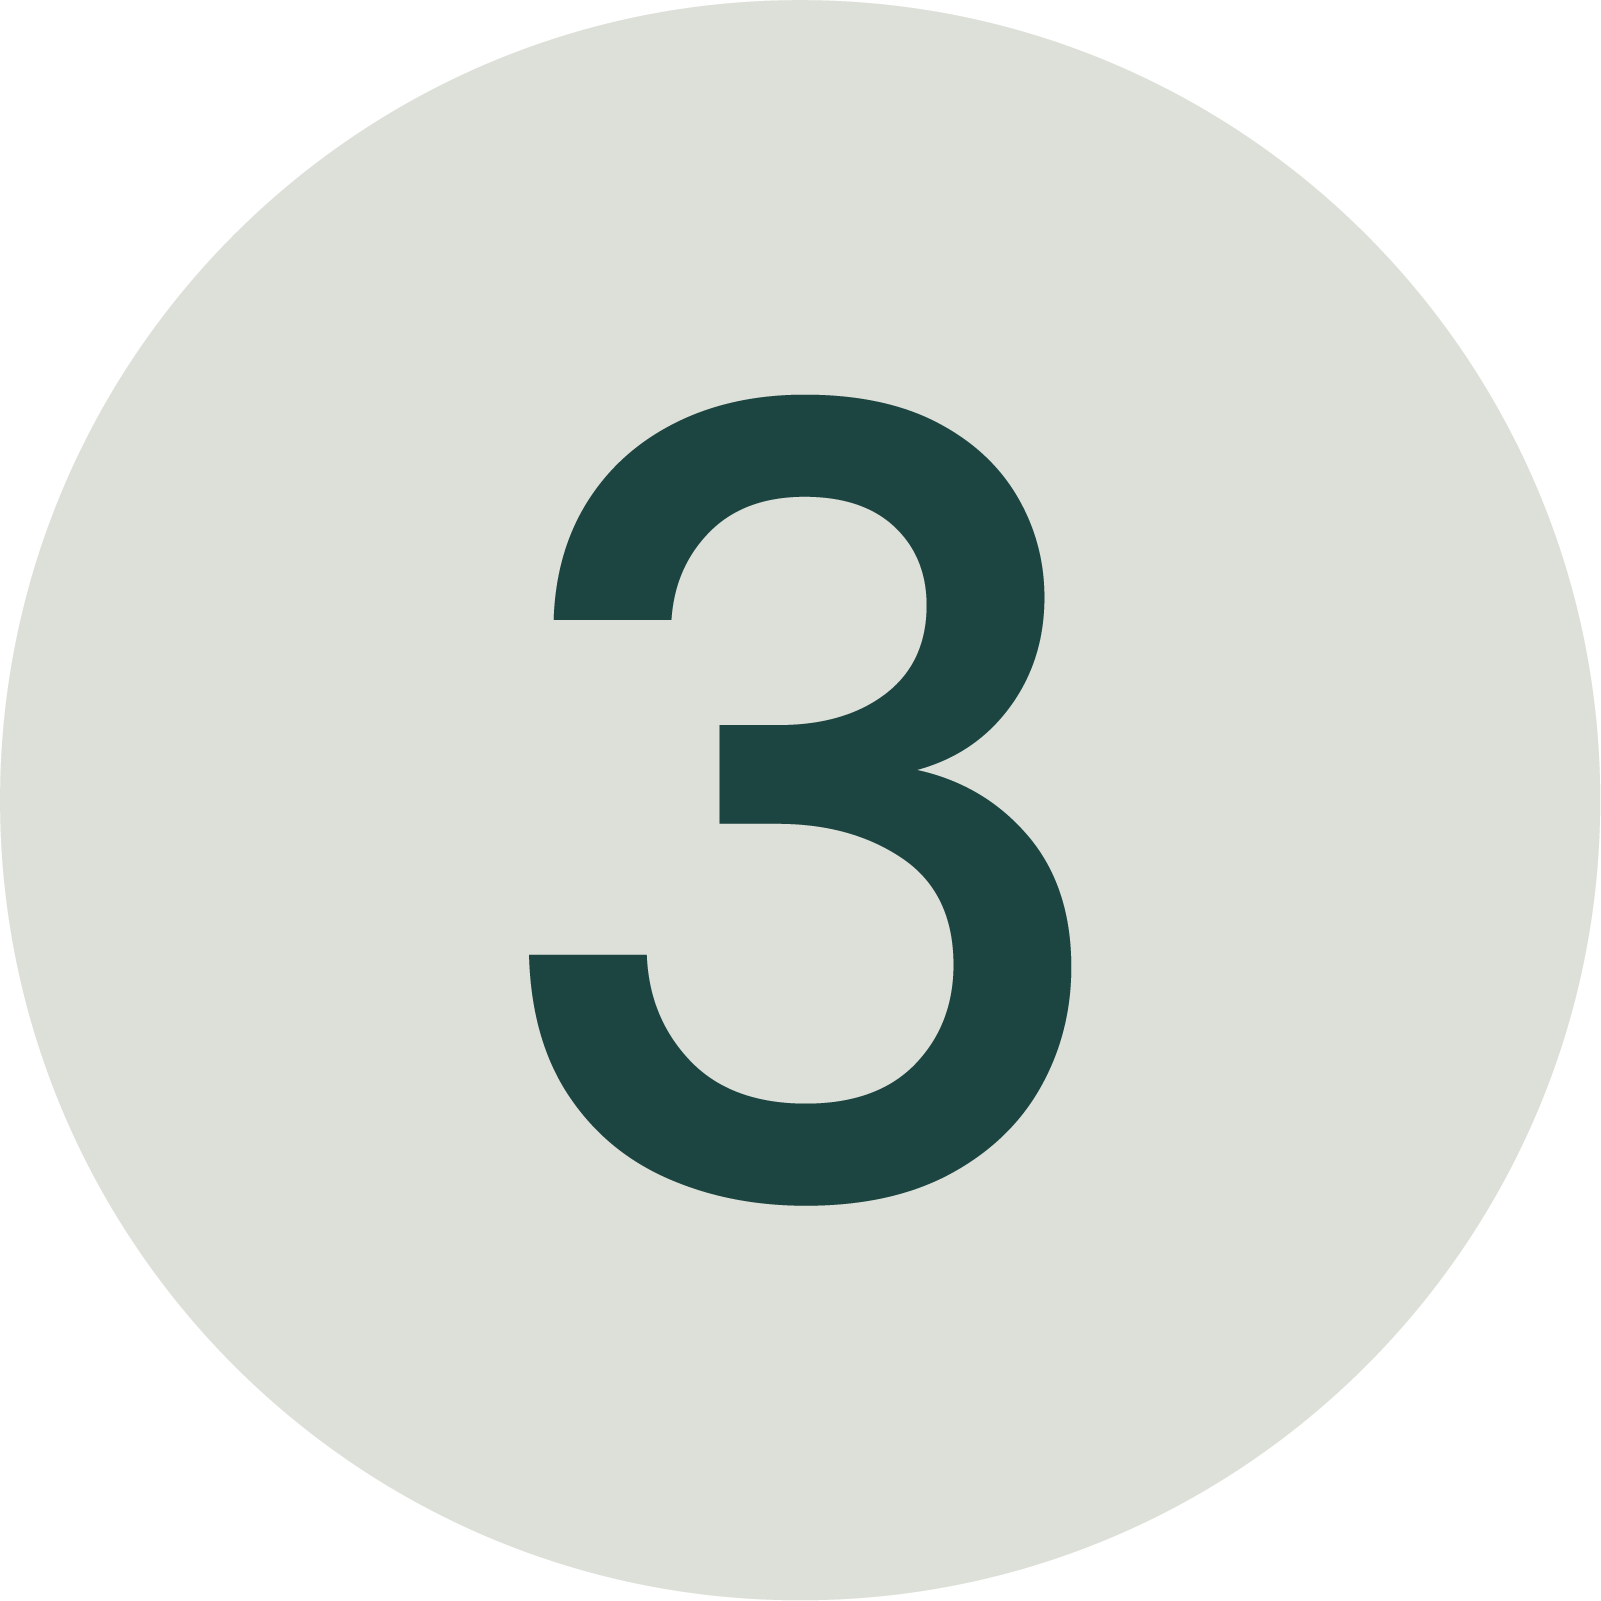 Grünes Symbol der Nummer 3